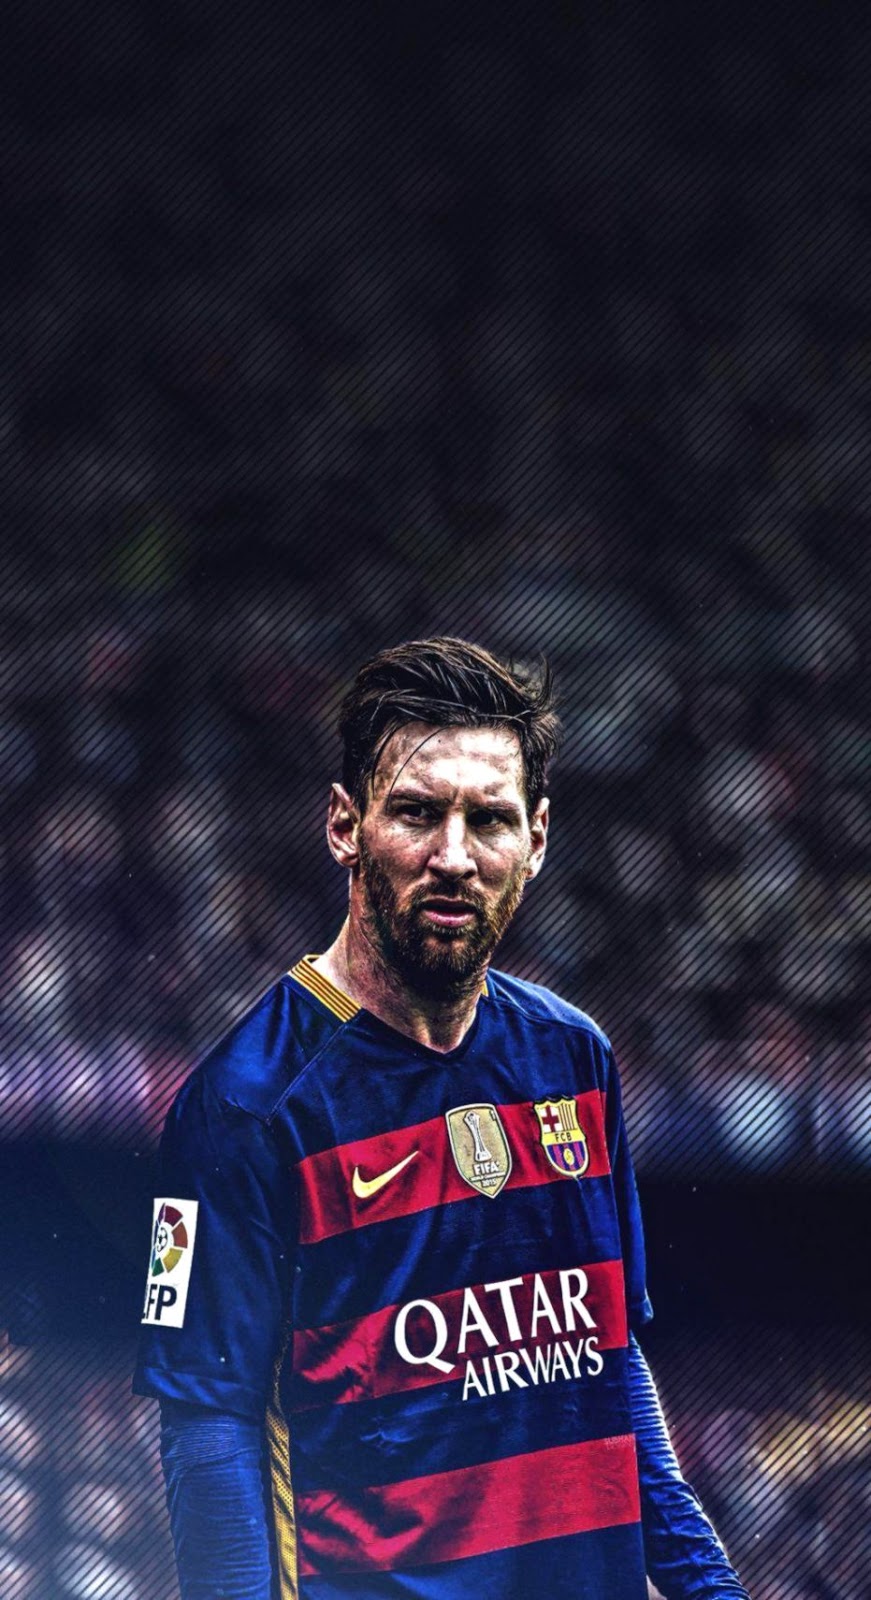 Lionel Messi - biểu tượng của bóng đá thế giới sẽ khiến trái tim bạn rung động khi sở hữu bức ảnh nền iPhone của anh ấy. Hãy trang trí cho chiếc điện thoại của bạn một phong cách đầy mạnh mẽ và cá tính.